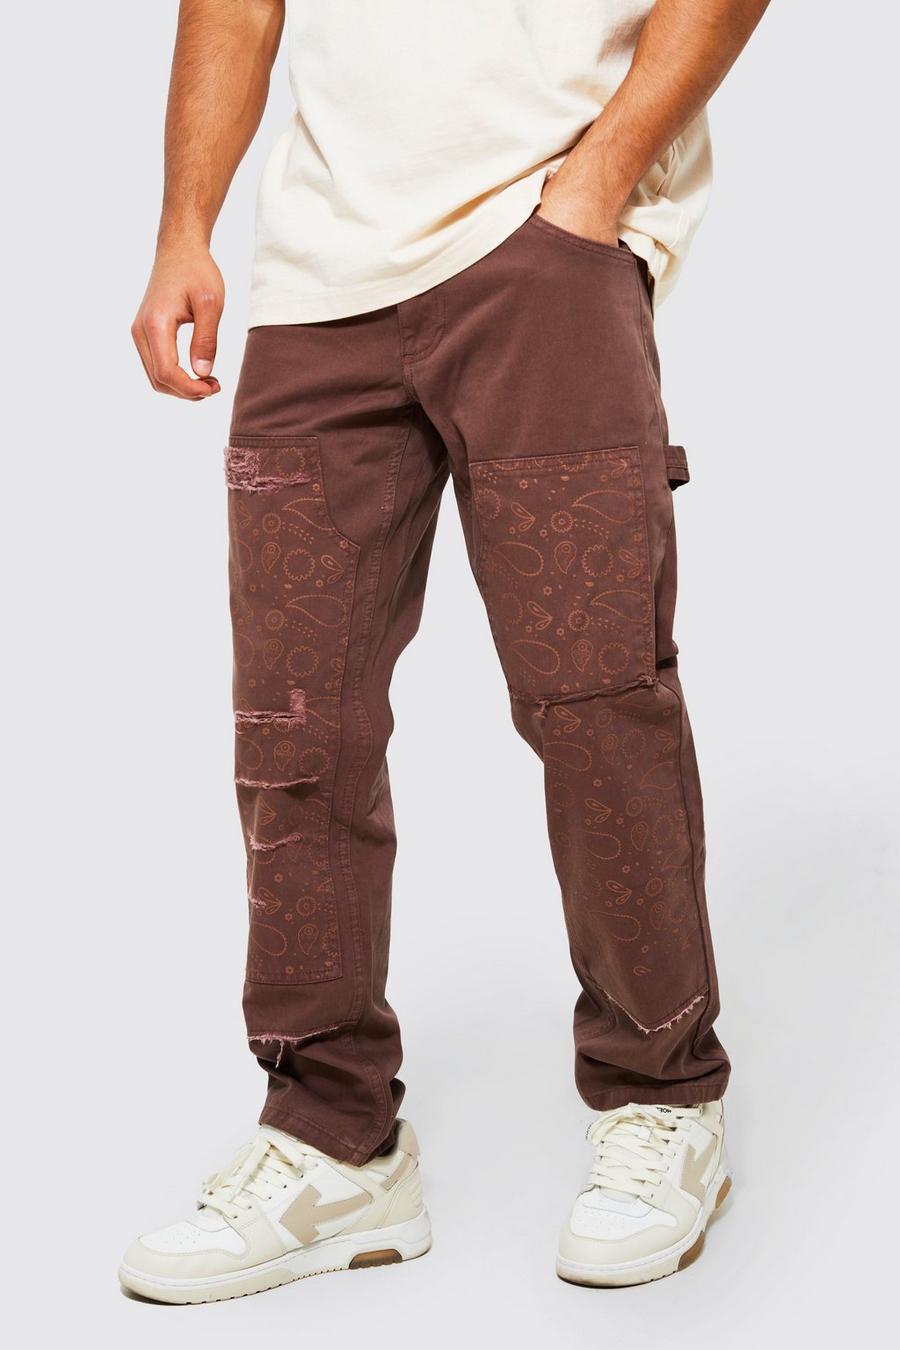 שוקולד marrón מכנסי עבודה בגזרה ישרה עם עיטור קרעים